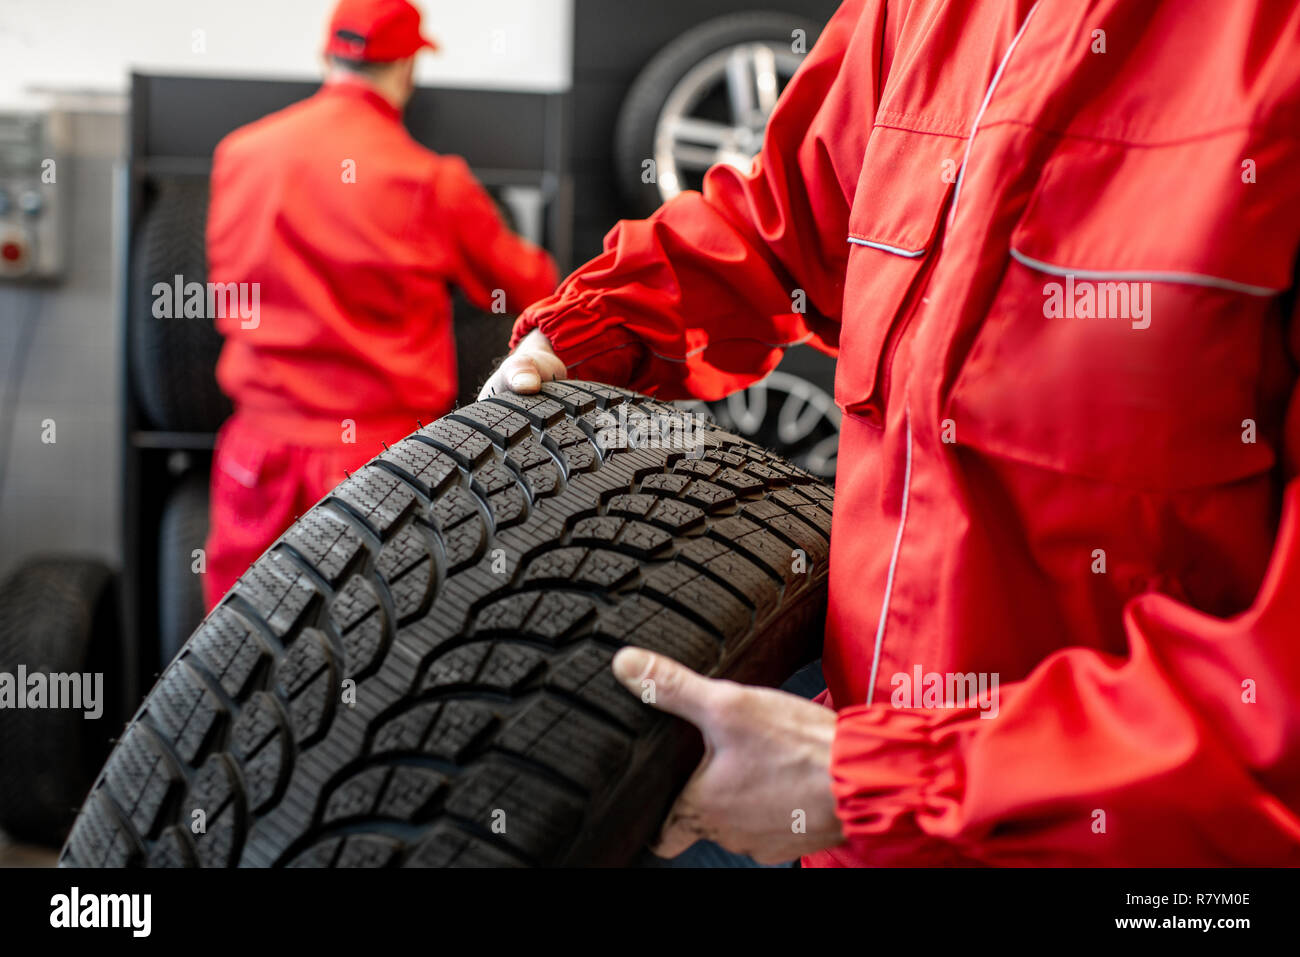 Travailleur dans l'exécution uniforme des pneus neufs à la location de service ou magasin, close-up view Banque D'Images